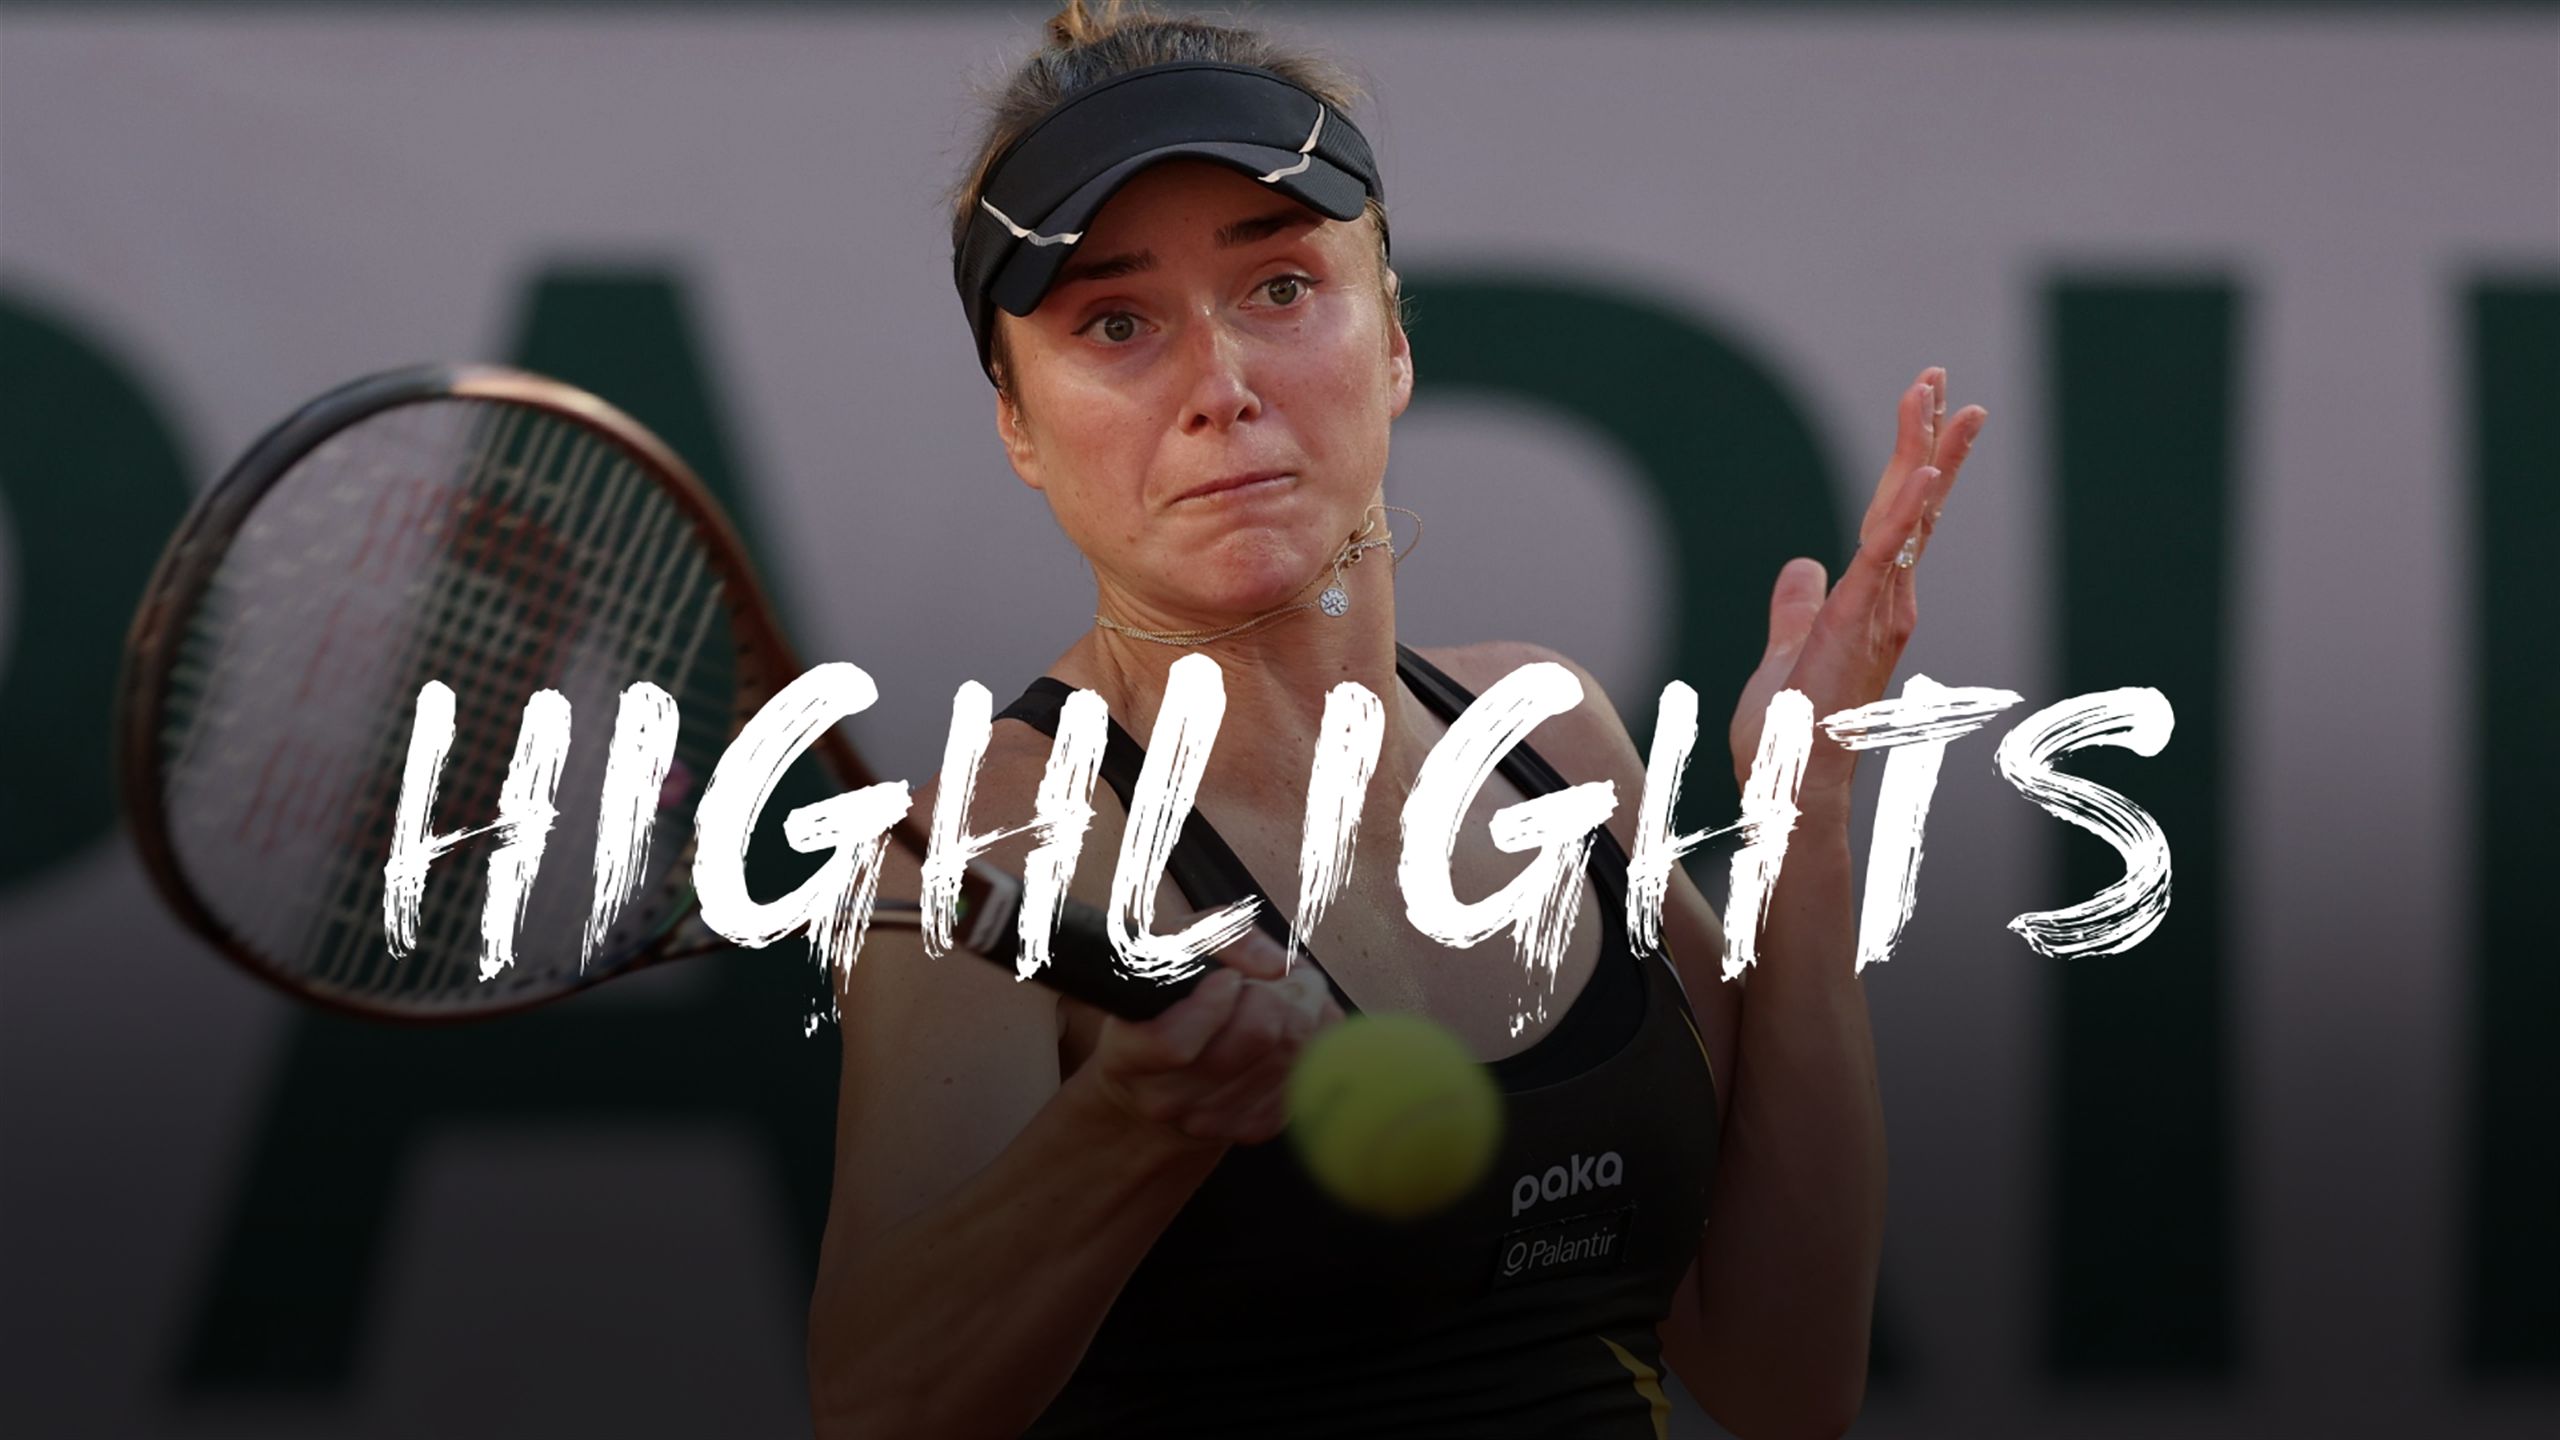 Elina Svitolina v Daria Kasatkina - French Open 2023 highlights - Tennis video